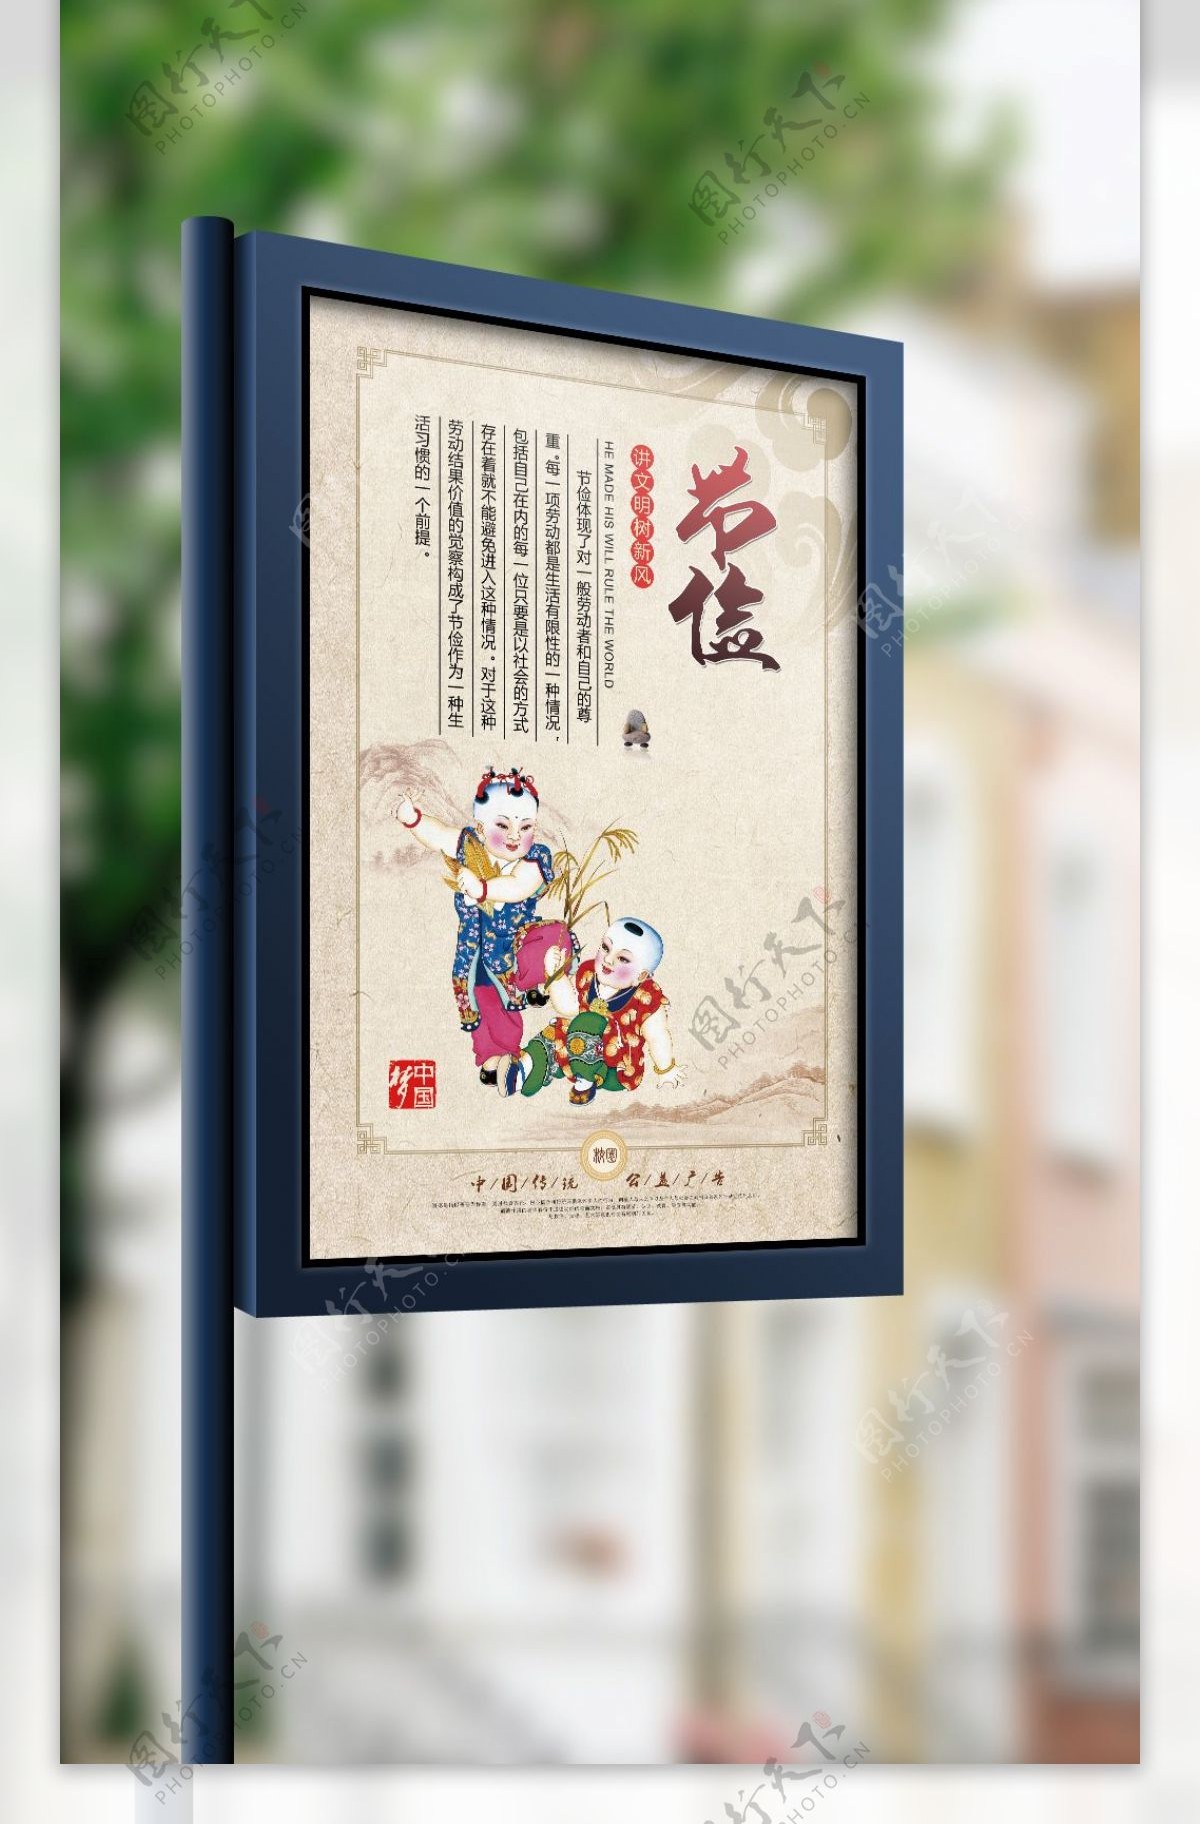 中国传统校园文化节俭公益海报